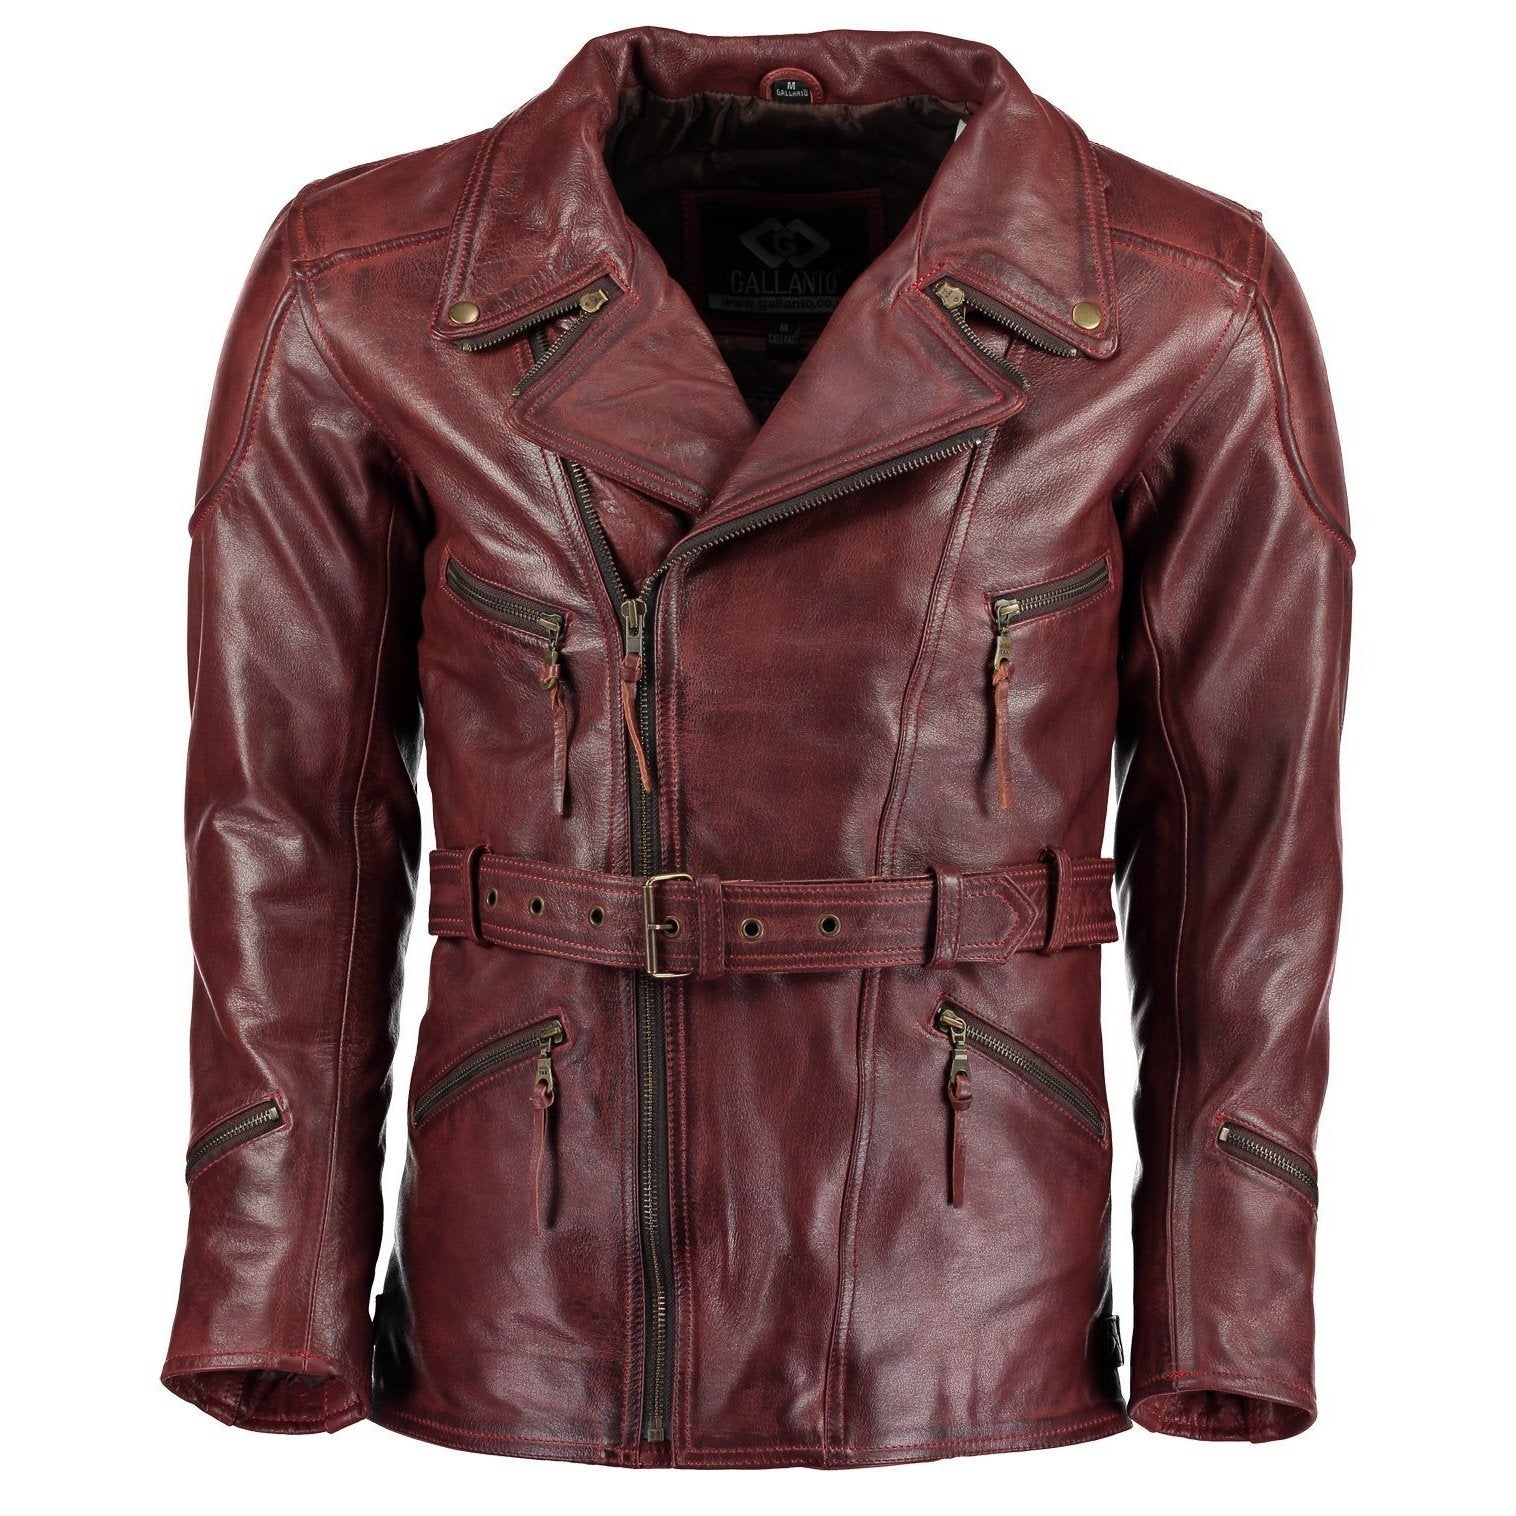 Gallanto 3/4 Red Distressed Eddie Biker Leather Jacket Motorcycle ...